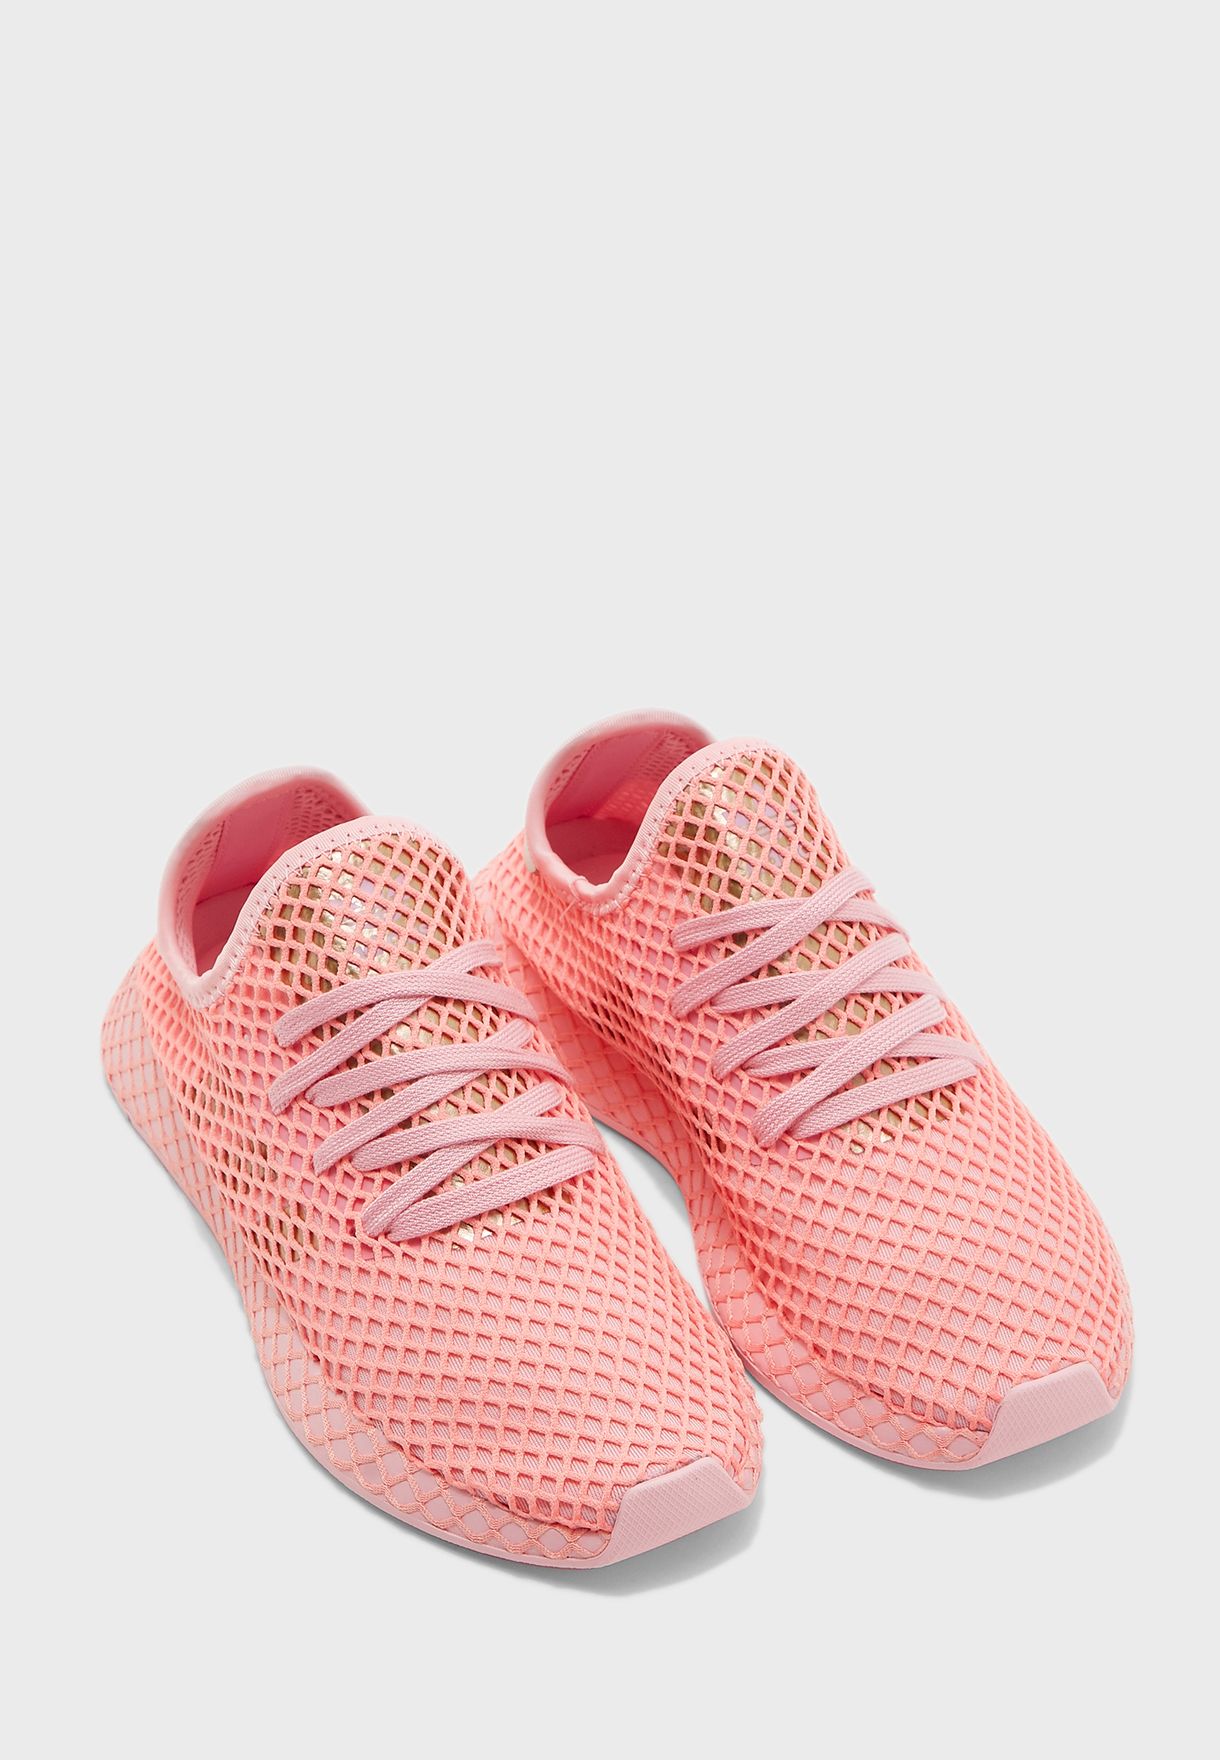 adidas deerupt baby pink